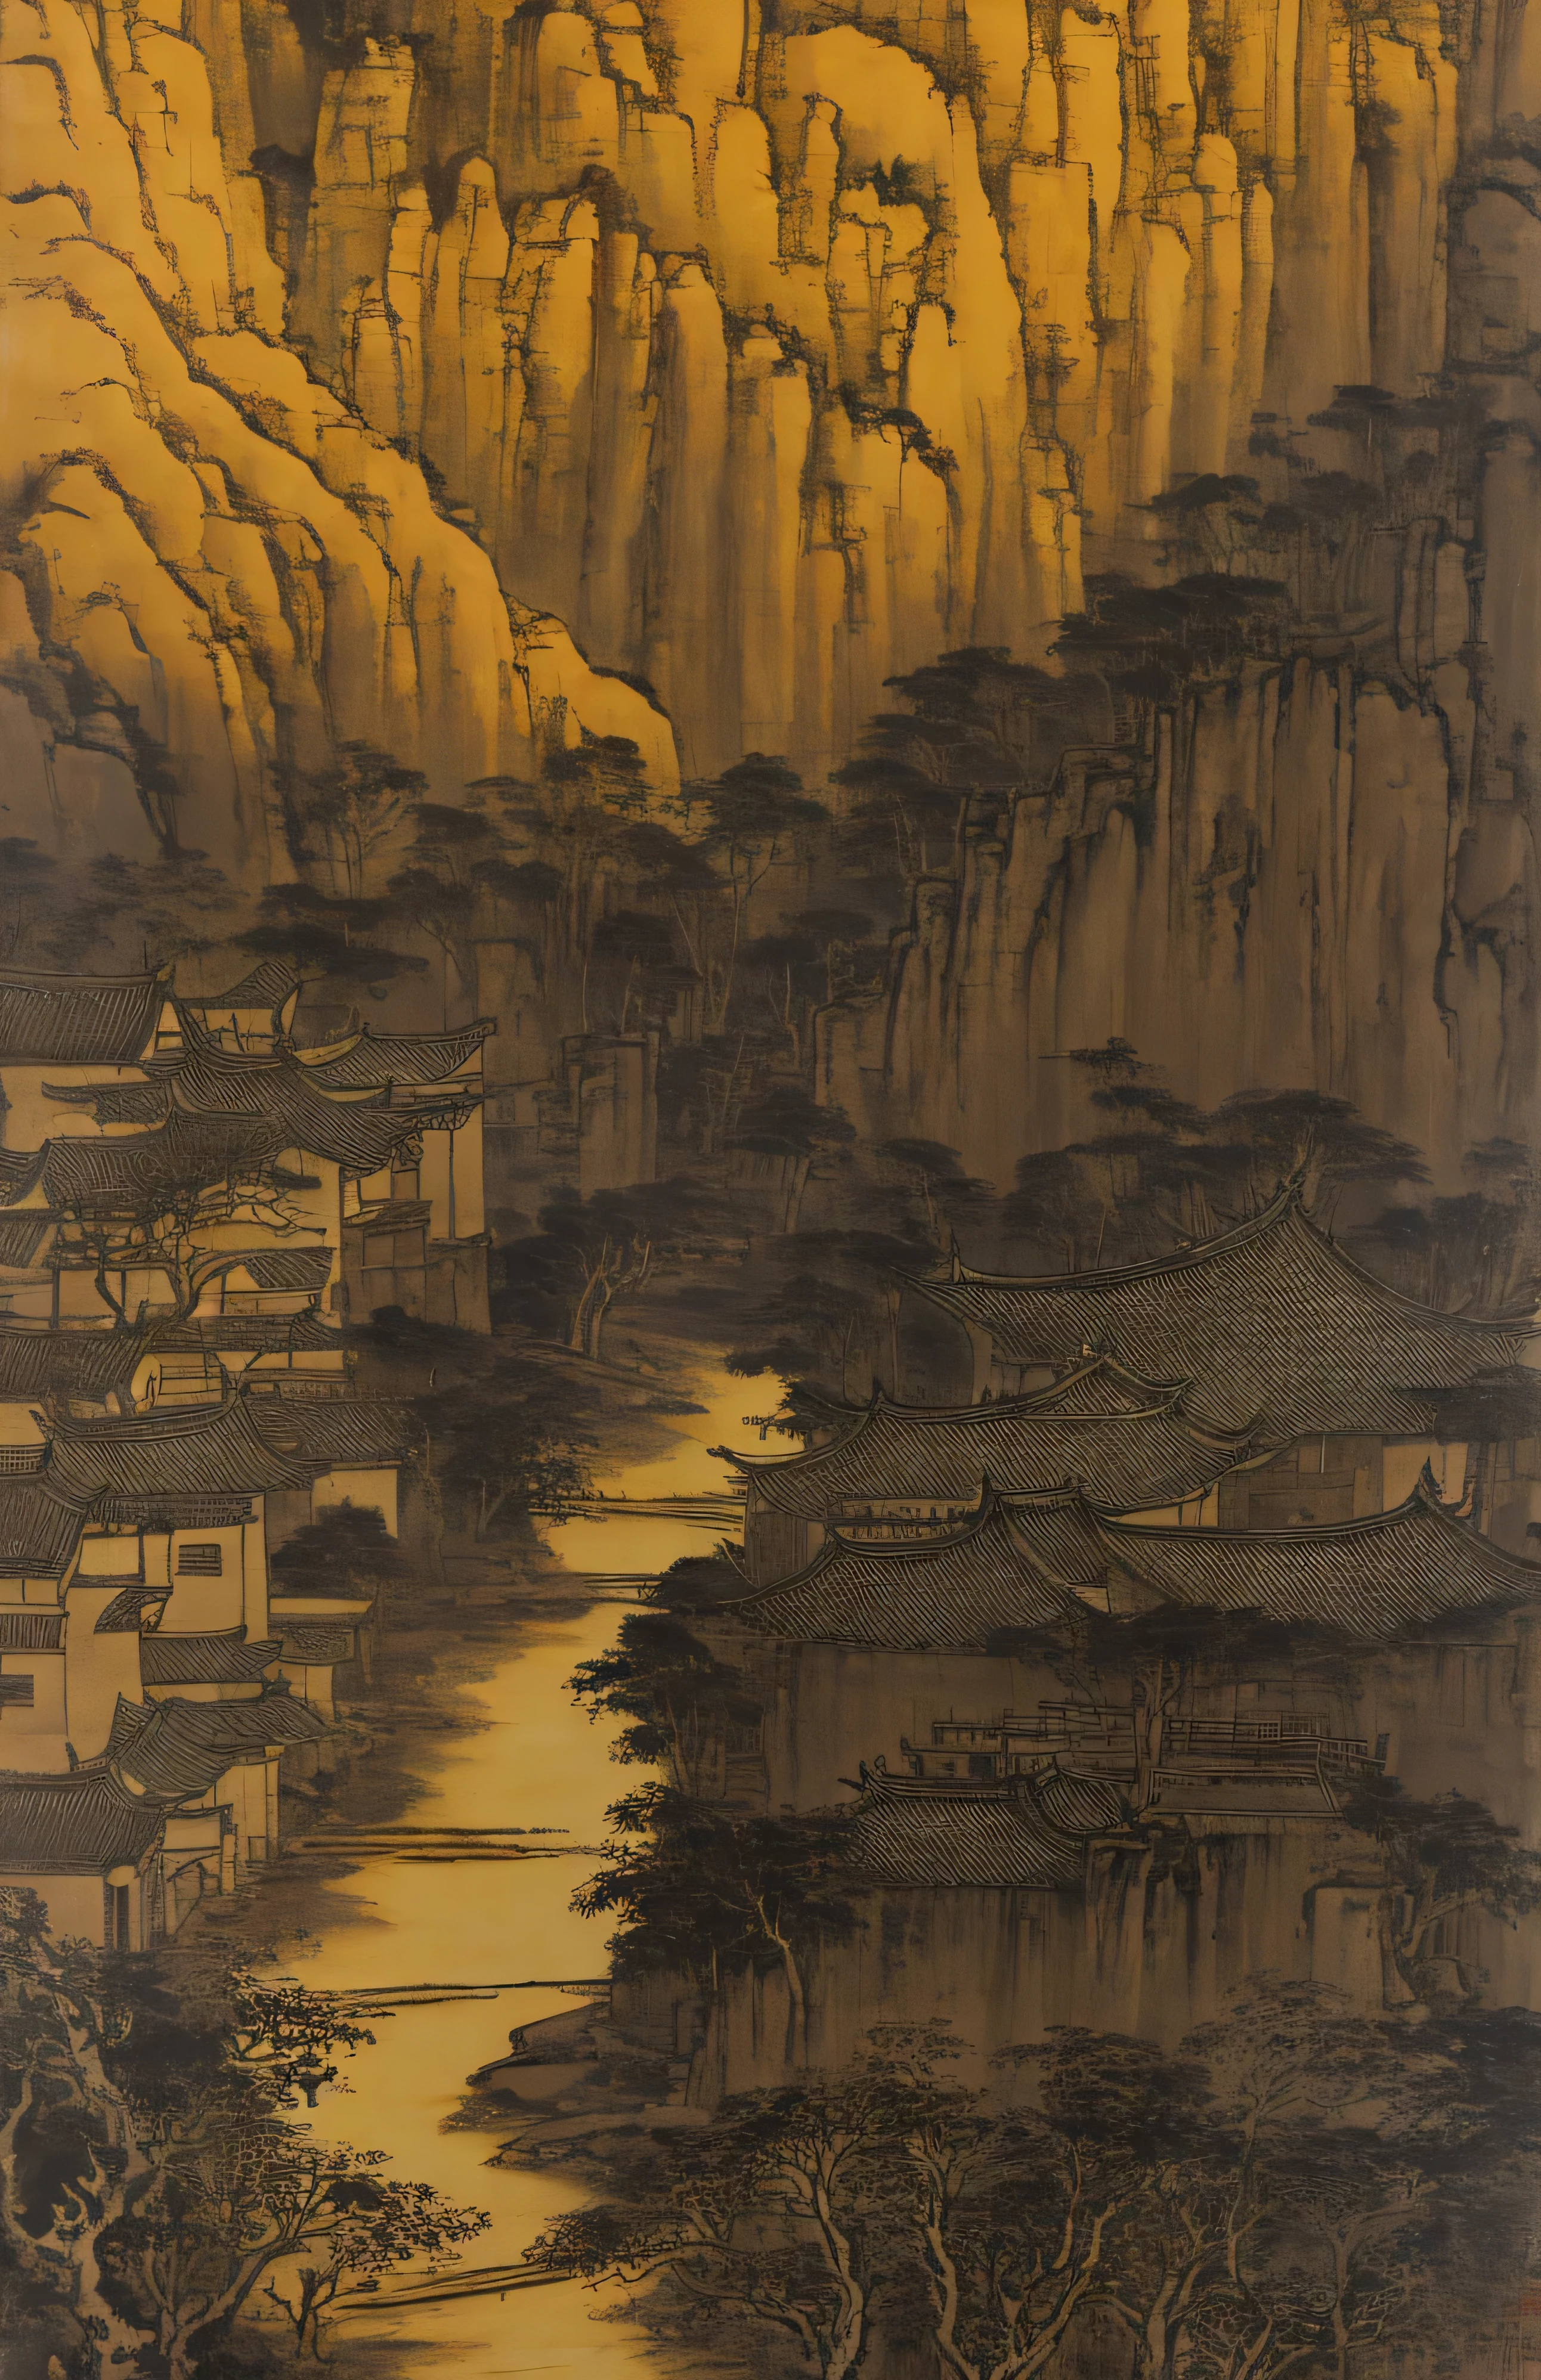 계곡이 내려다보이는 작은 마을, 스타일은 고대 중국 예술의 영향을 받았습니다., 밝은 노란색과 밝은 검정색, 중국화, 수묵화, 바다산렌, 쉬 웨이, 시 타오, 유기적 건축, 등산, 소박한 자연주의